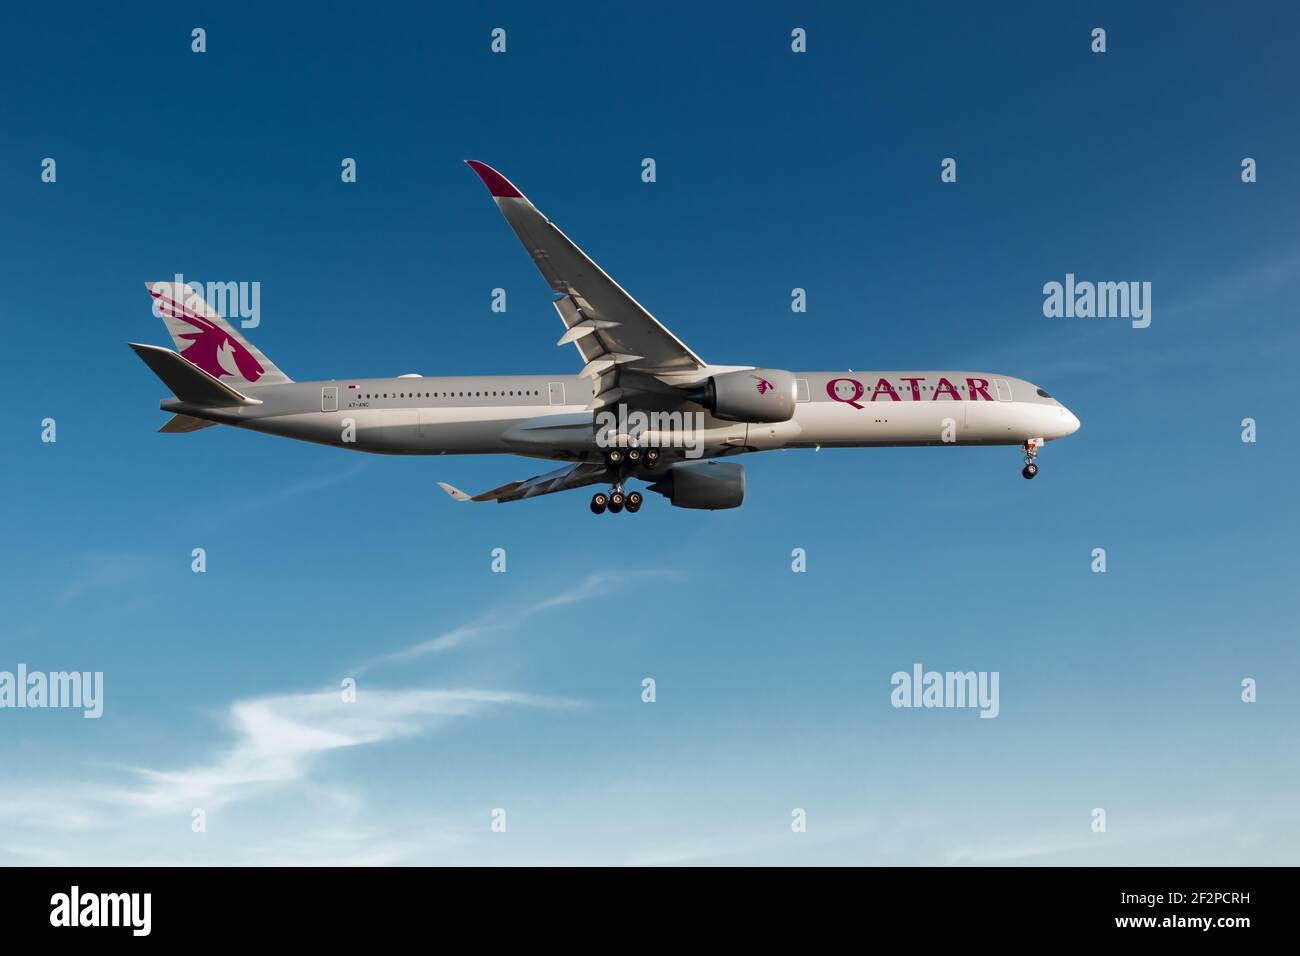 Londra, Aeroporto di Heathrow, Regno Unito, 2020 maggio - Qatar Airways, Airbus A350 sull'approccio finale durante un cielo serale caldo e blu. Immagine Abdul Quraishi Foto Stock